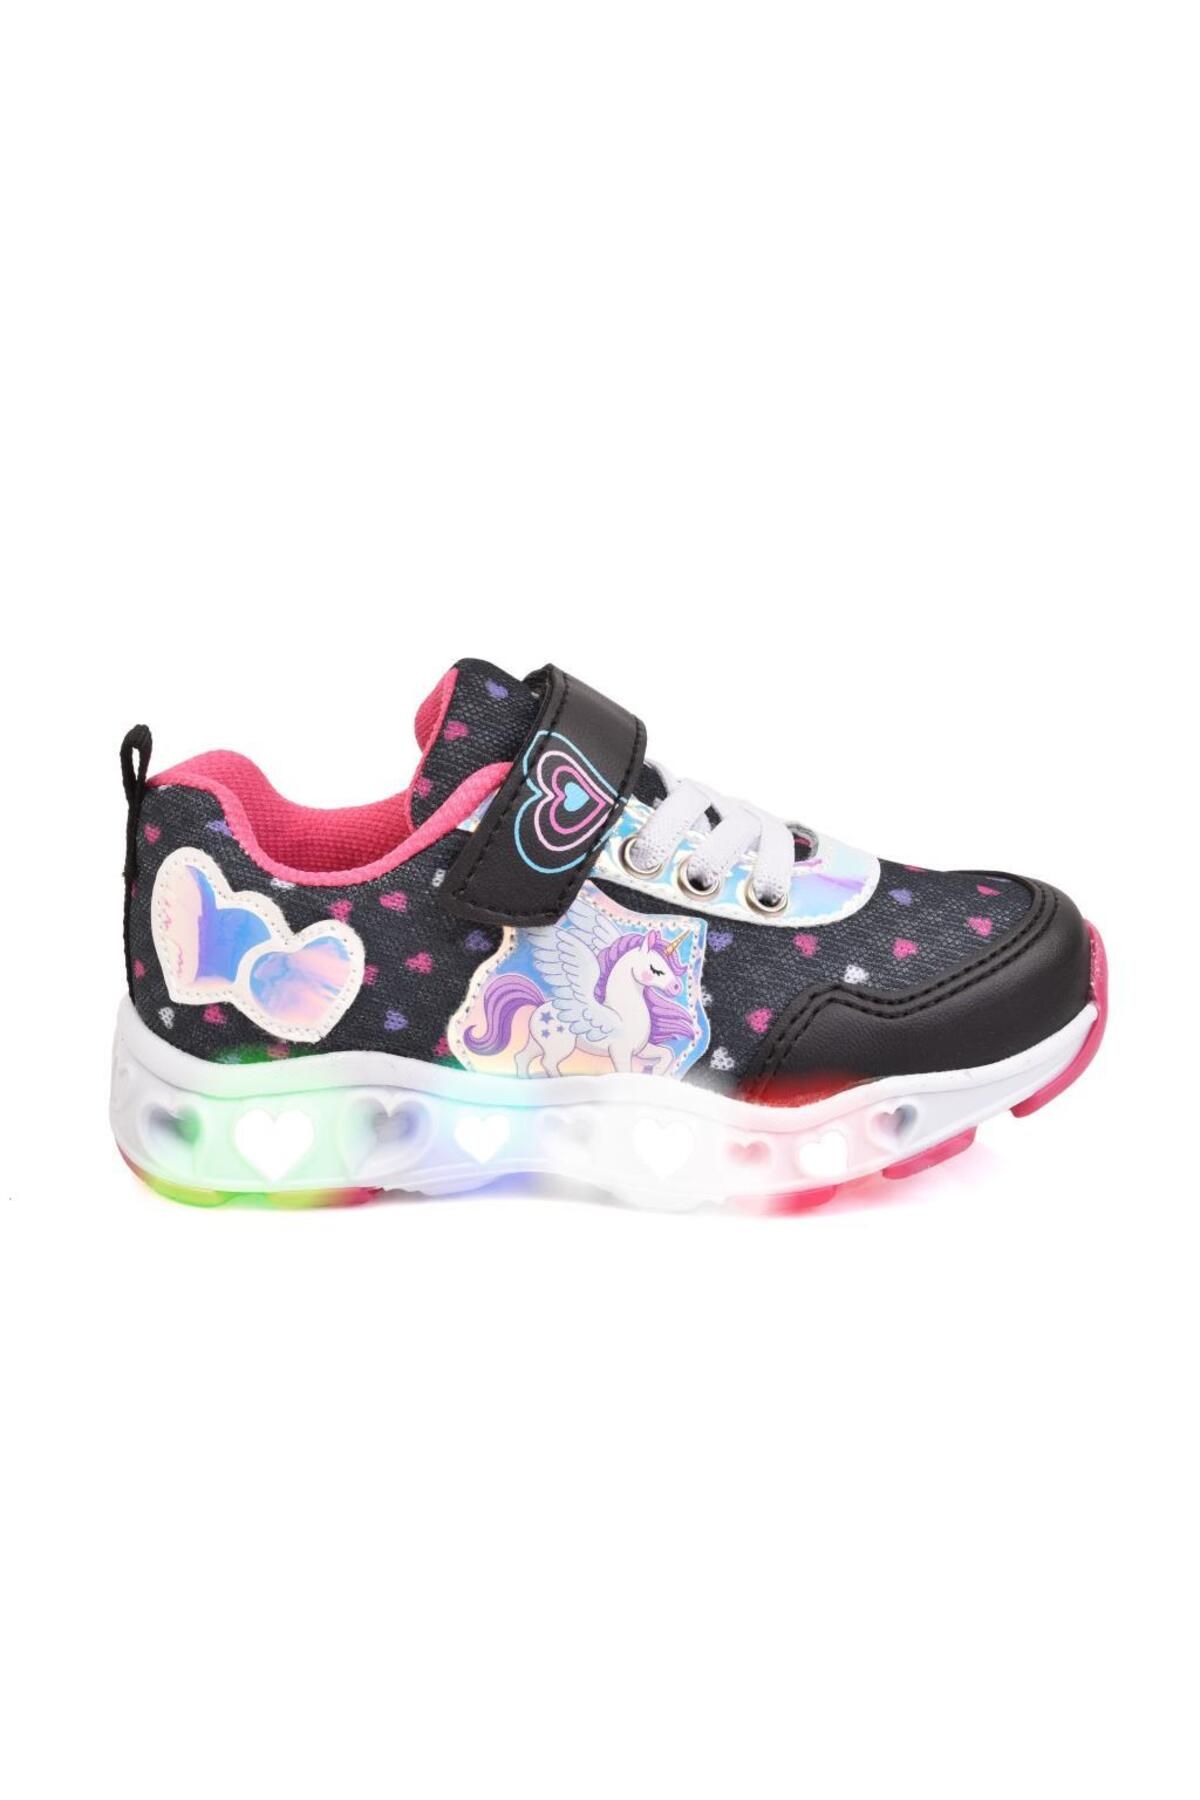 Unicorn Kız Çocuk Siyah/pembe Rahat Esnek Anatomik Taban Işıklı Spor Ayakkabı Sneaker